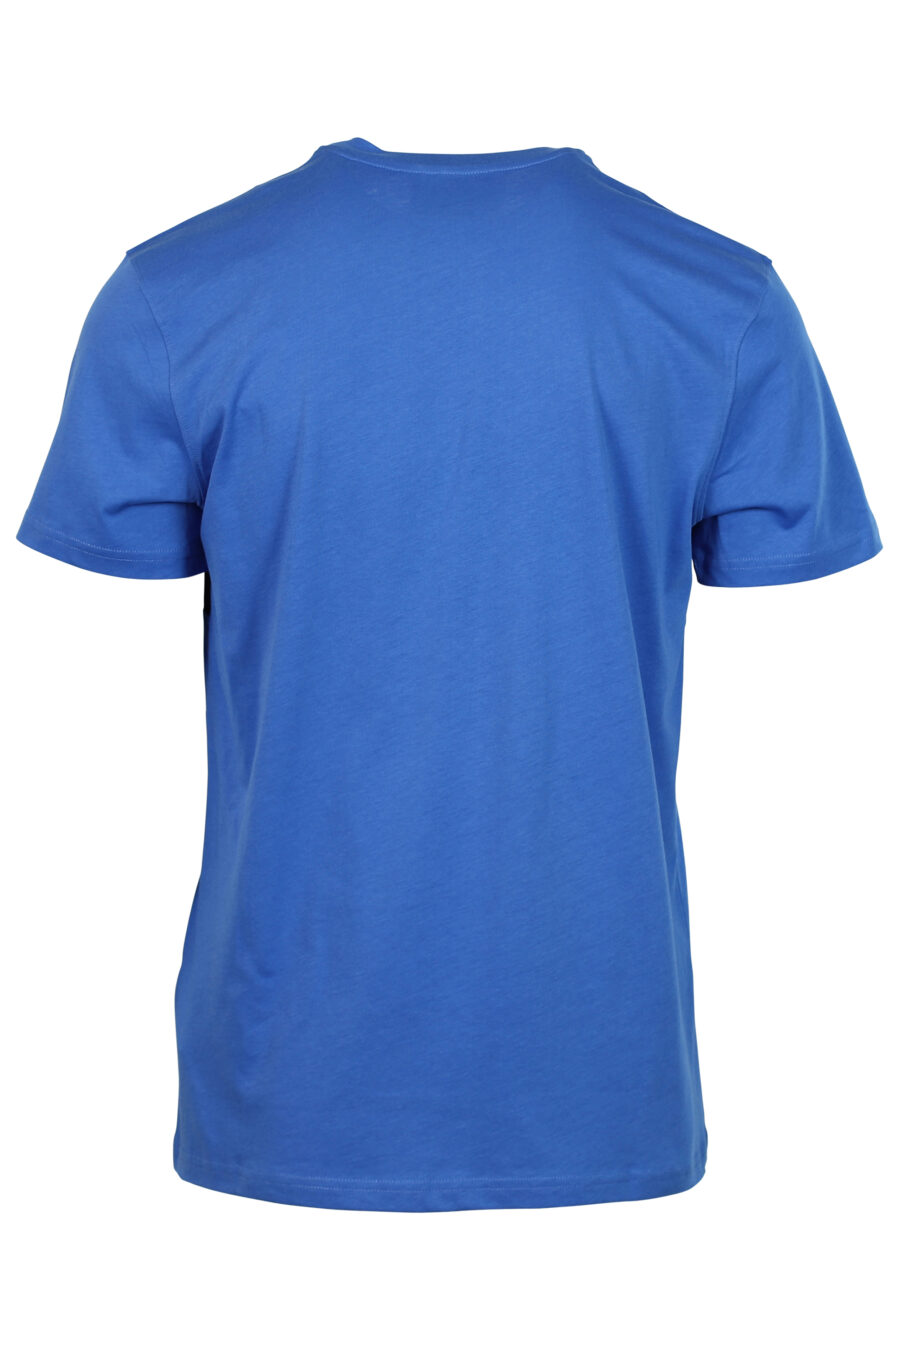 T-shirt azul com logótipo de riscas pretas - 667112834116 2